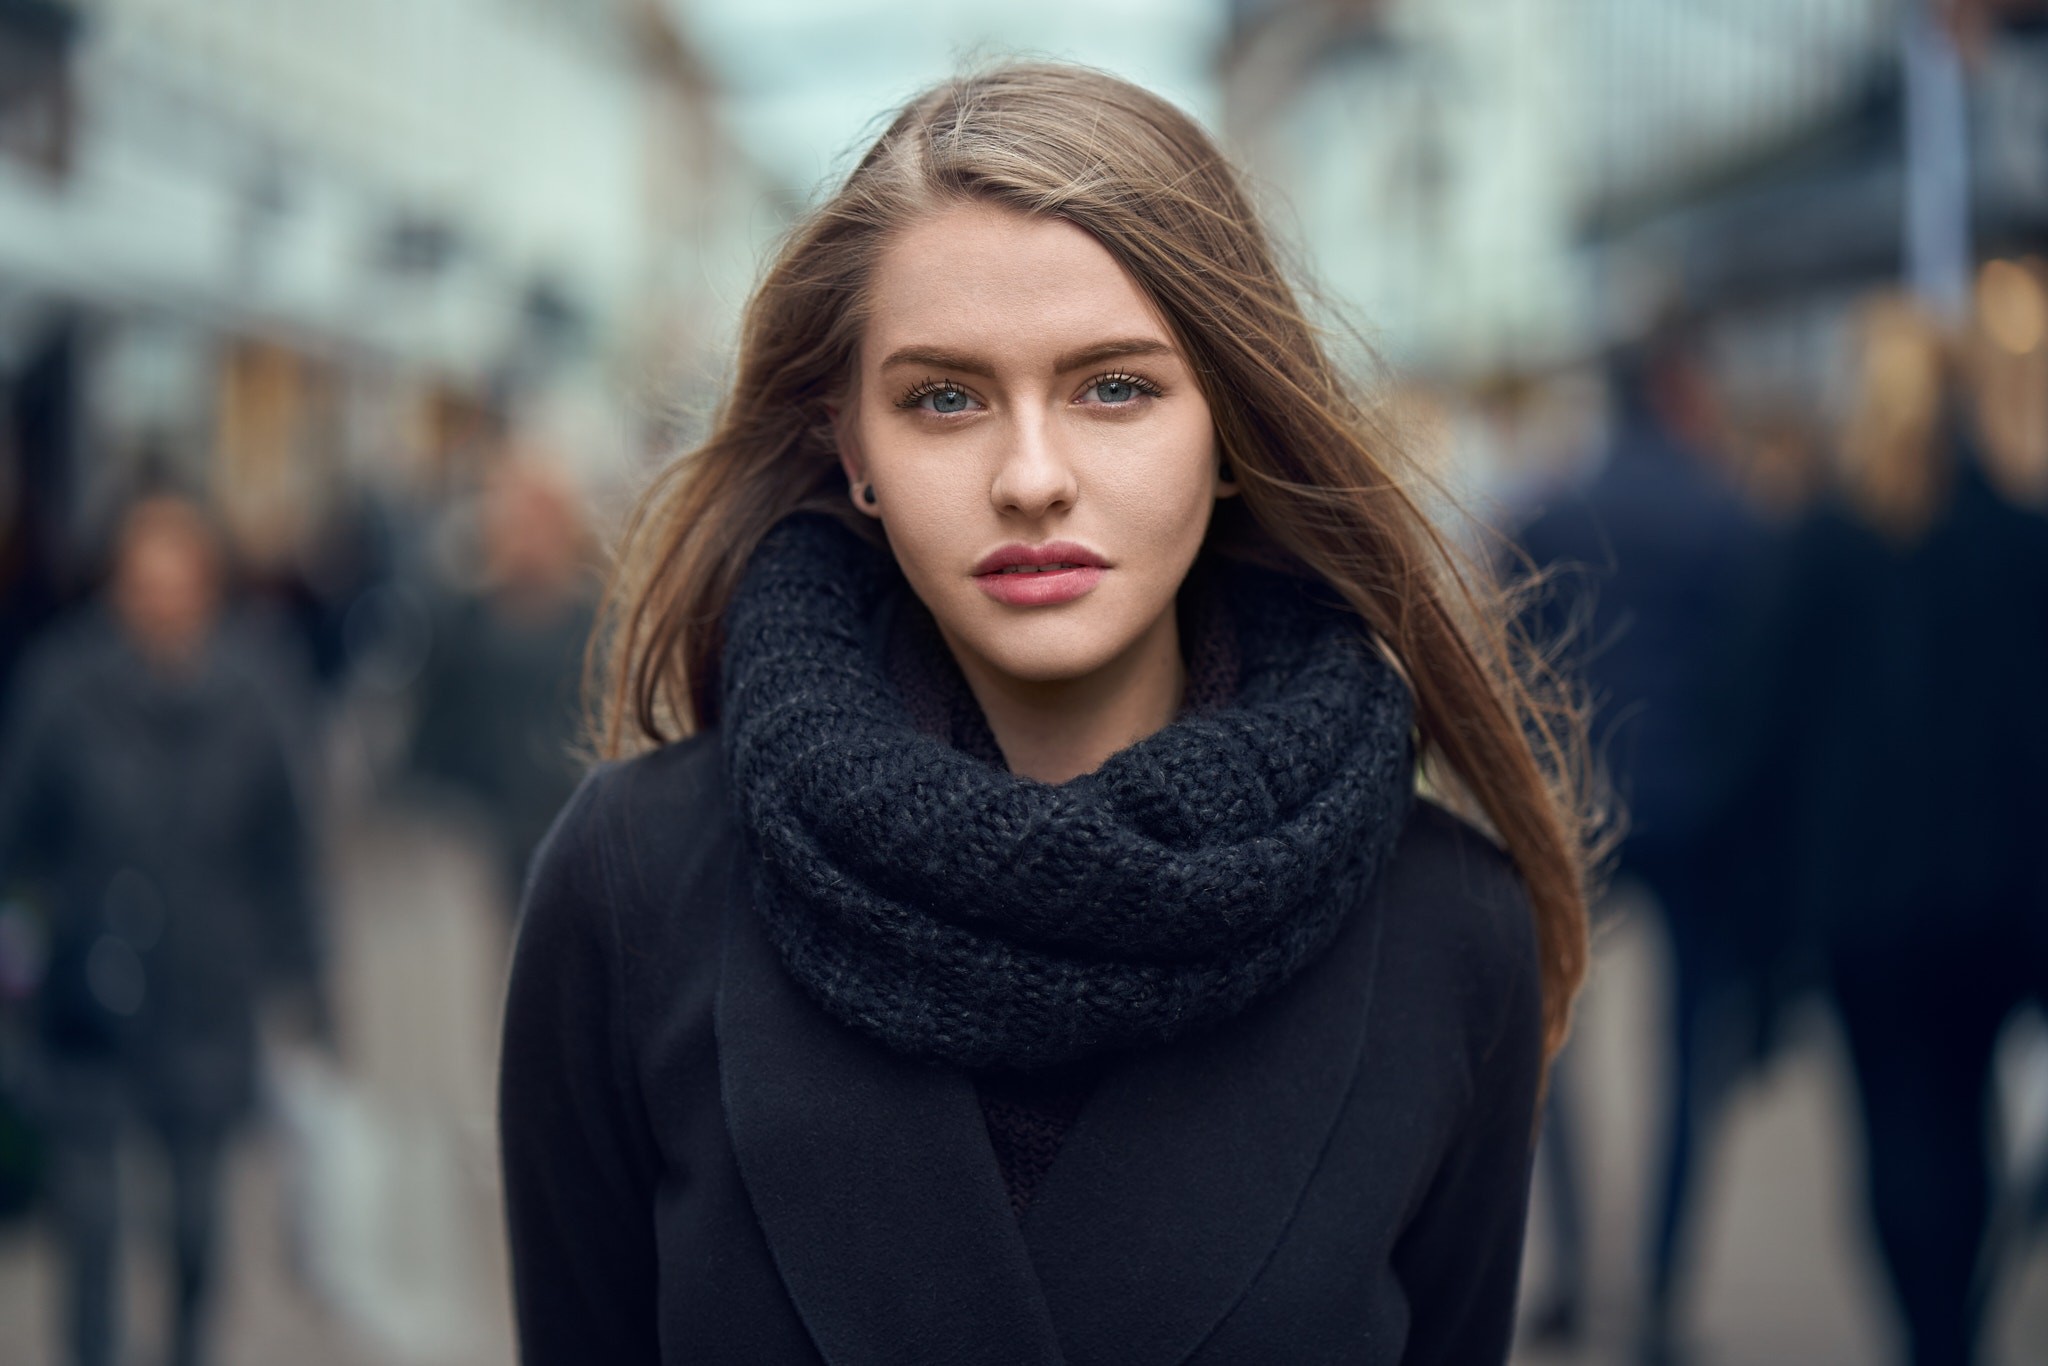 People 2048x1366 women face portrait depth of field scarf black coat coats model blue eyes brunette black scarf